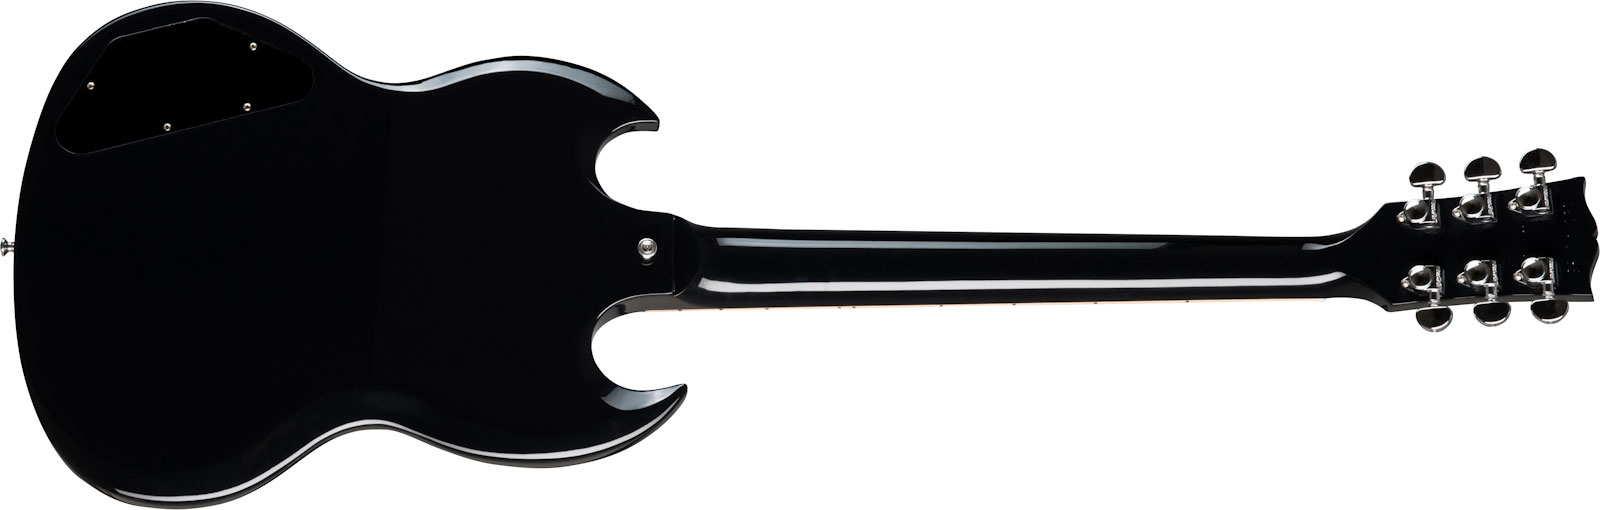 Gibson Sg Standard Lh Gaucher 2h Ht Rw - Ebony - Linkshandige elektrische gitaar - Variation 1